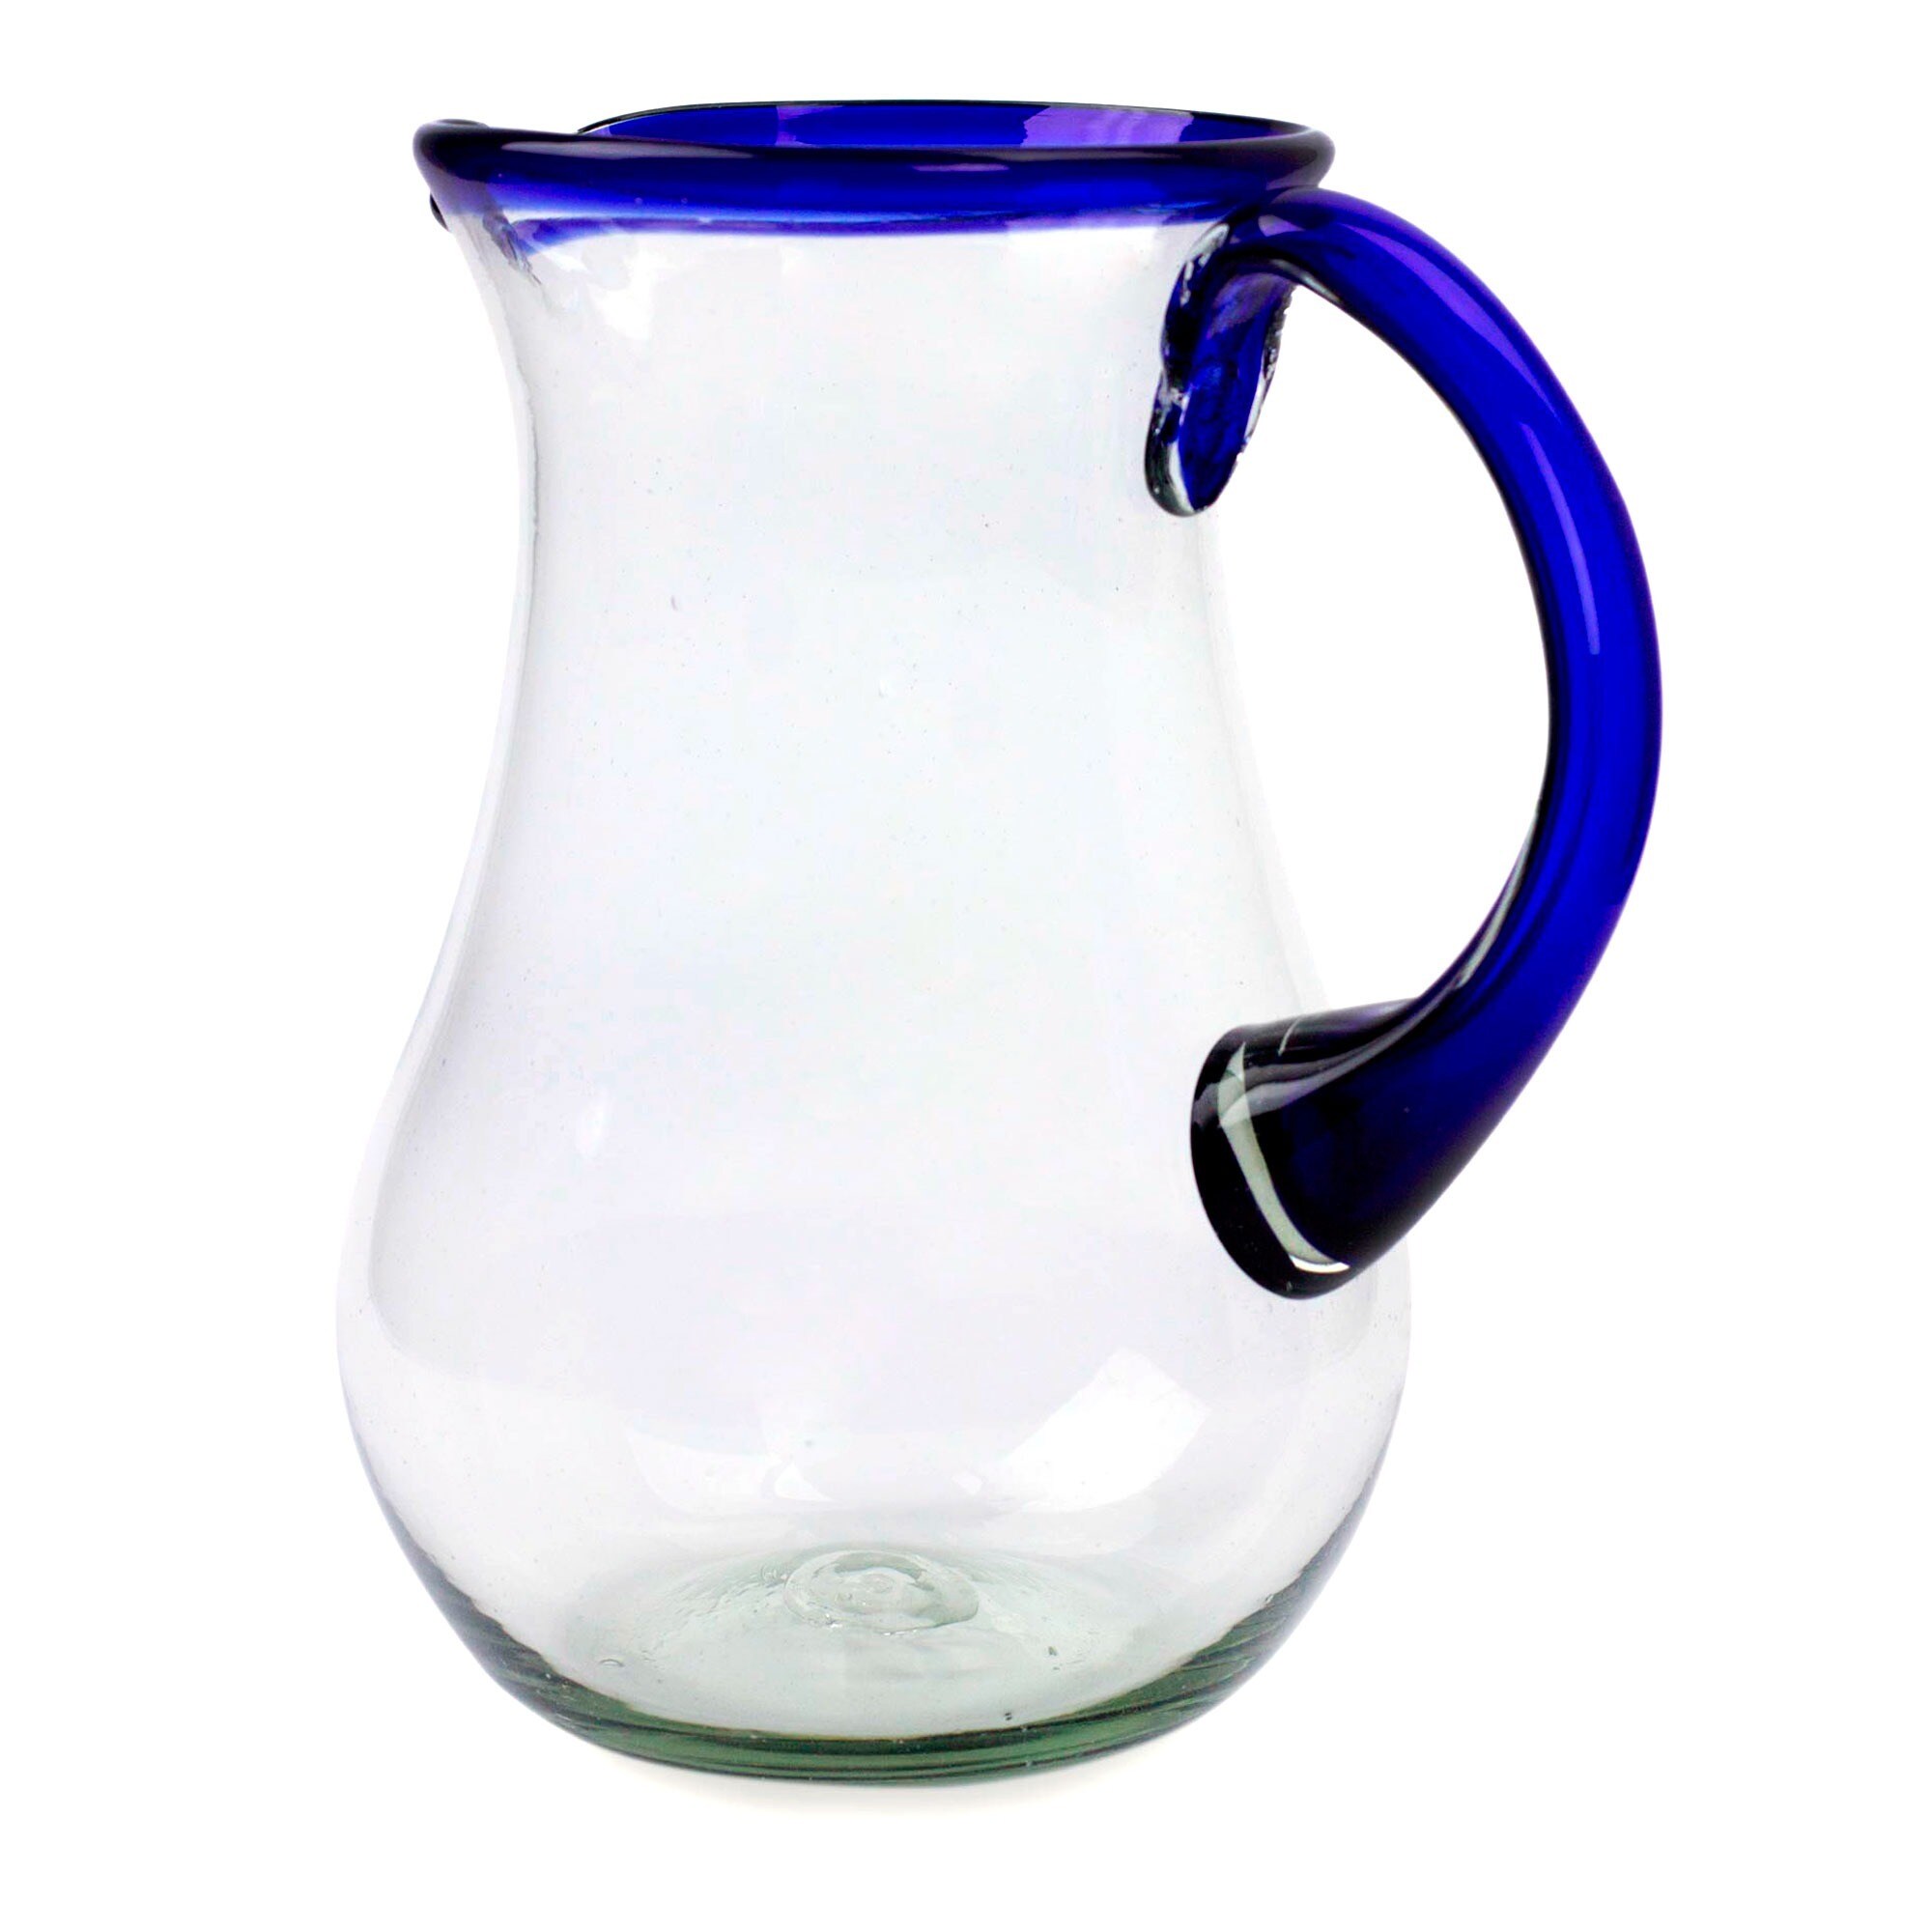 https://ak1.ostkcdn.com/images/products/3938569/Handmade-Glass-Blue-Grace-Pitcher-Mexico-5e990262-358a-4fce-a1d8-d081da4db190.jpg